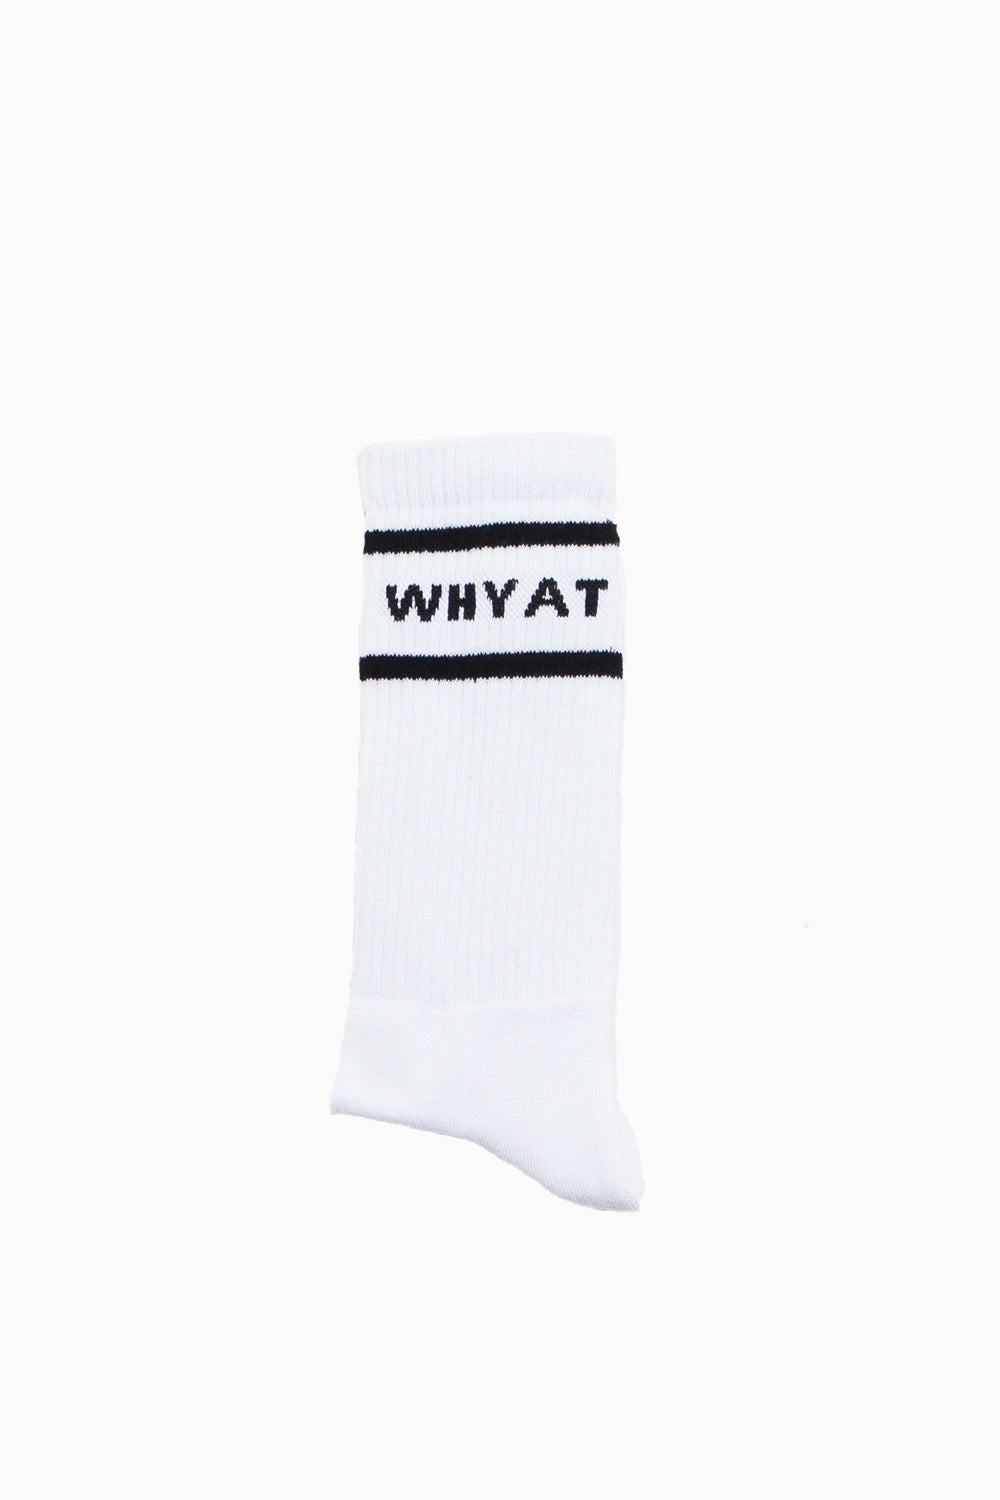 WHYAT B-Ball Socks -white